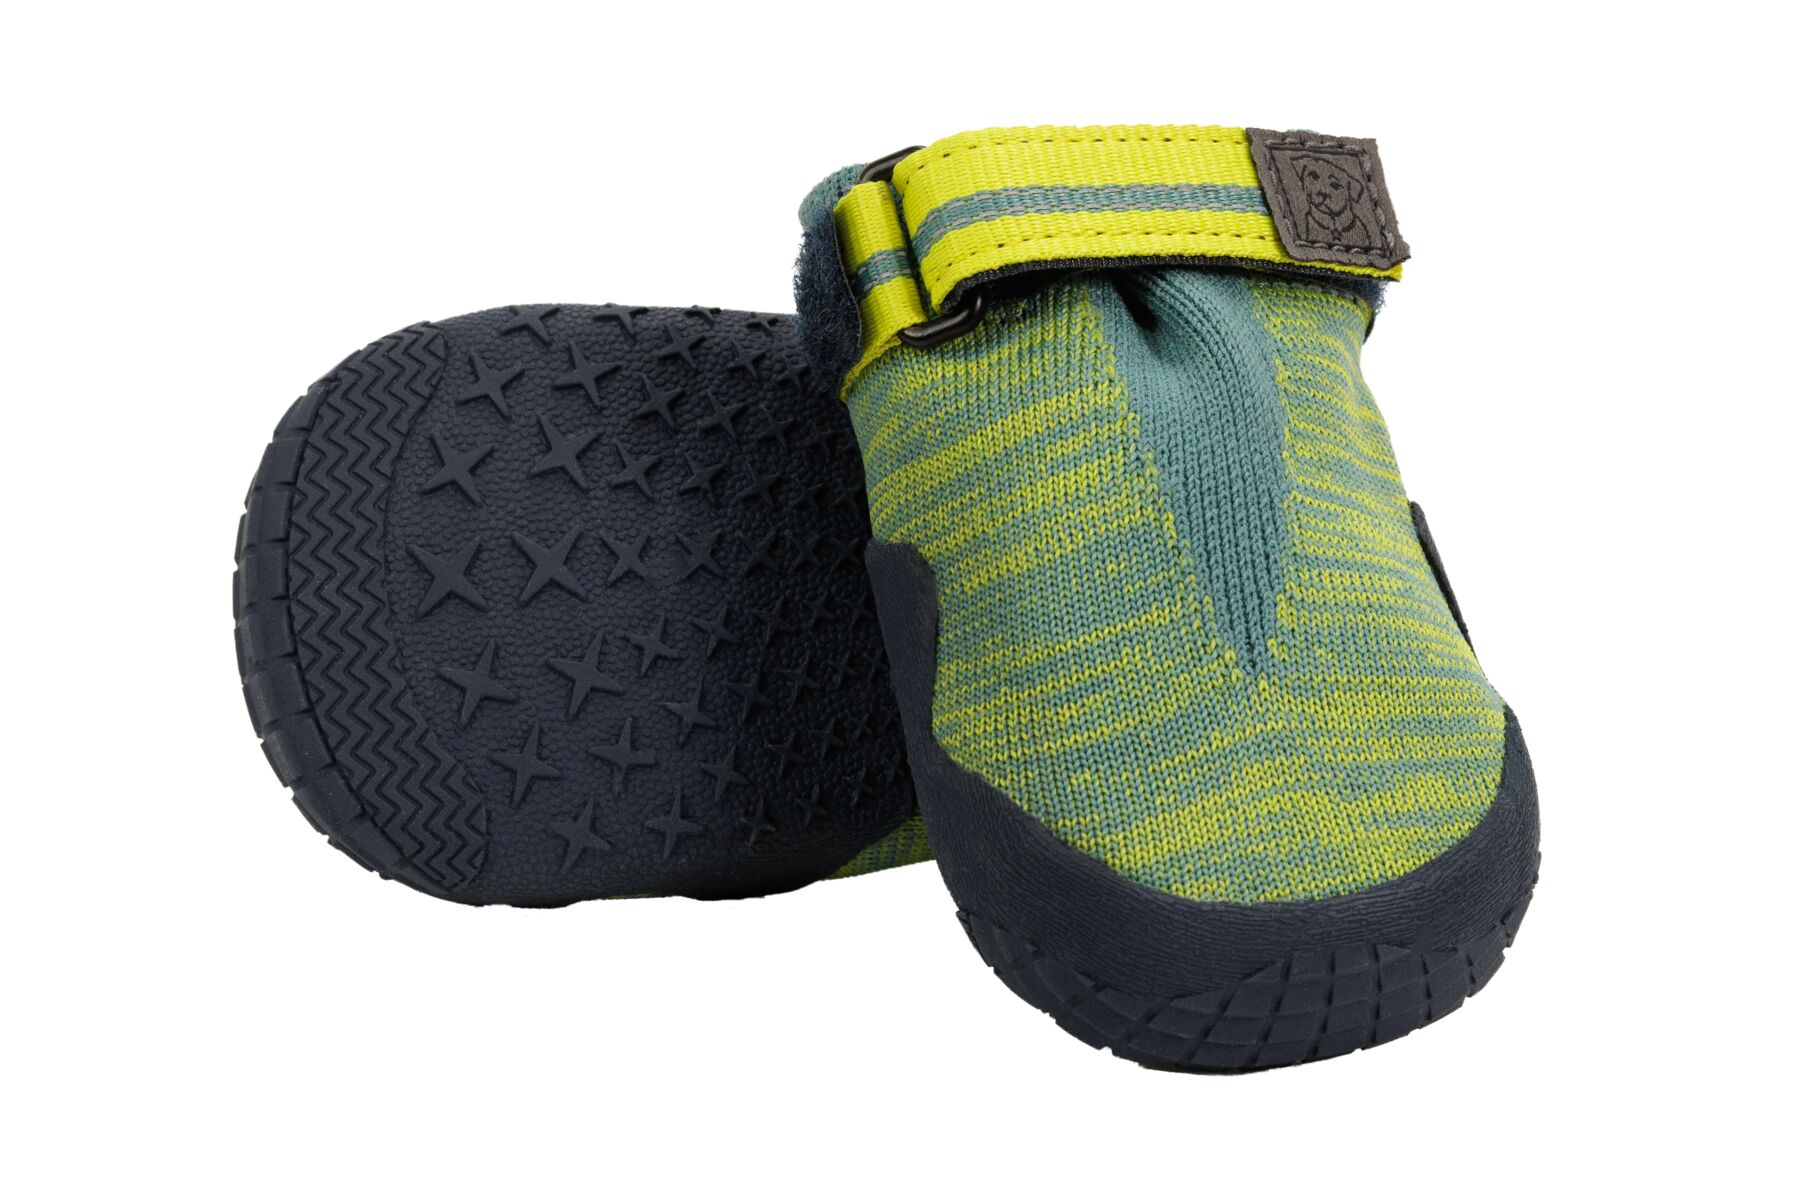 RuffWear Hi & Light™ Trail Shoes - set of 2 - River Rock Green